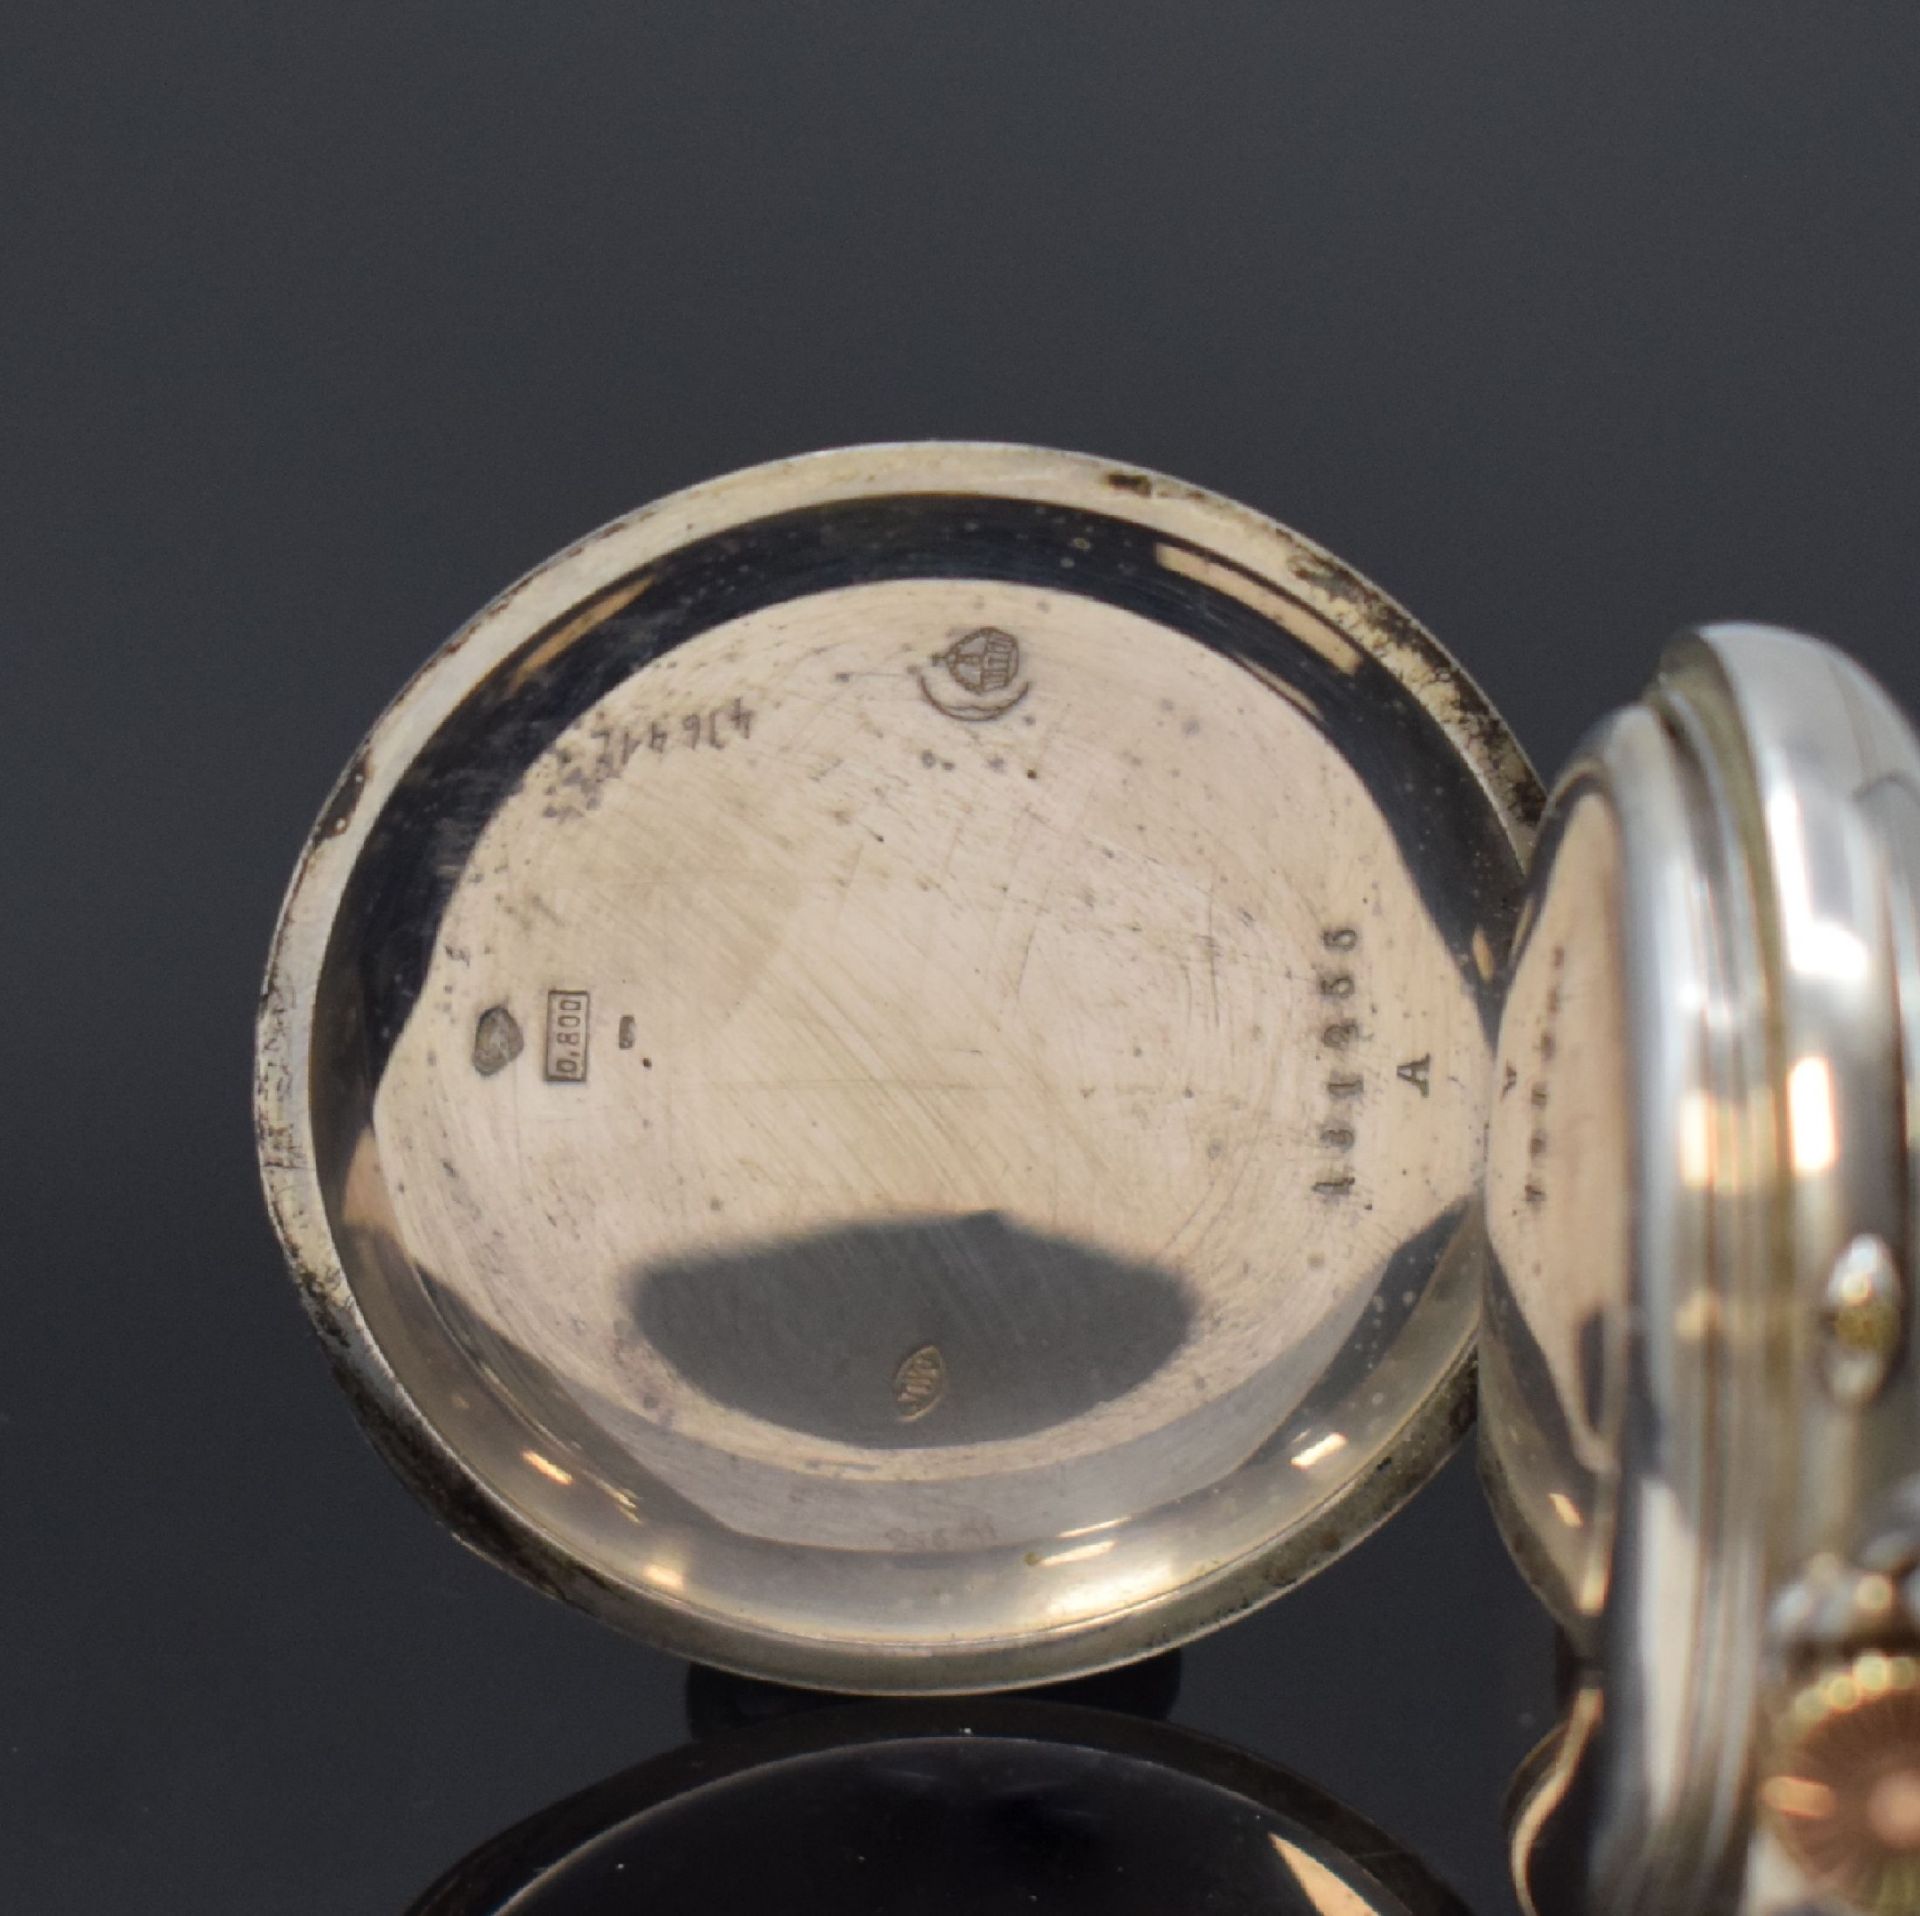 IWC offene Taschenuhr in 800er Silber,  Schweiz um 1898, - Bild 3 aus 6